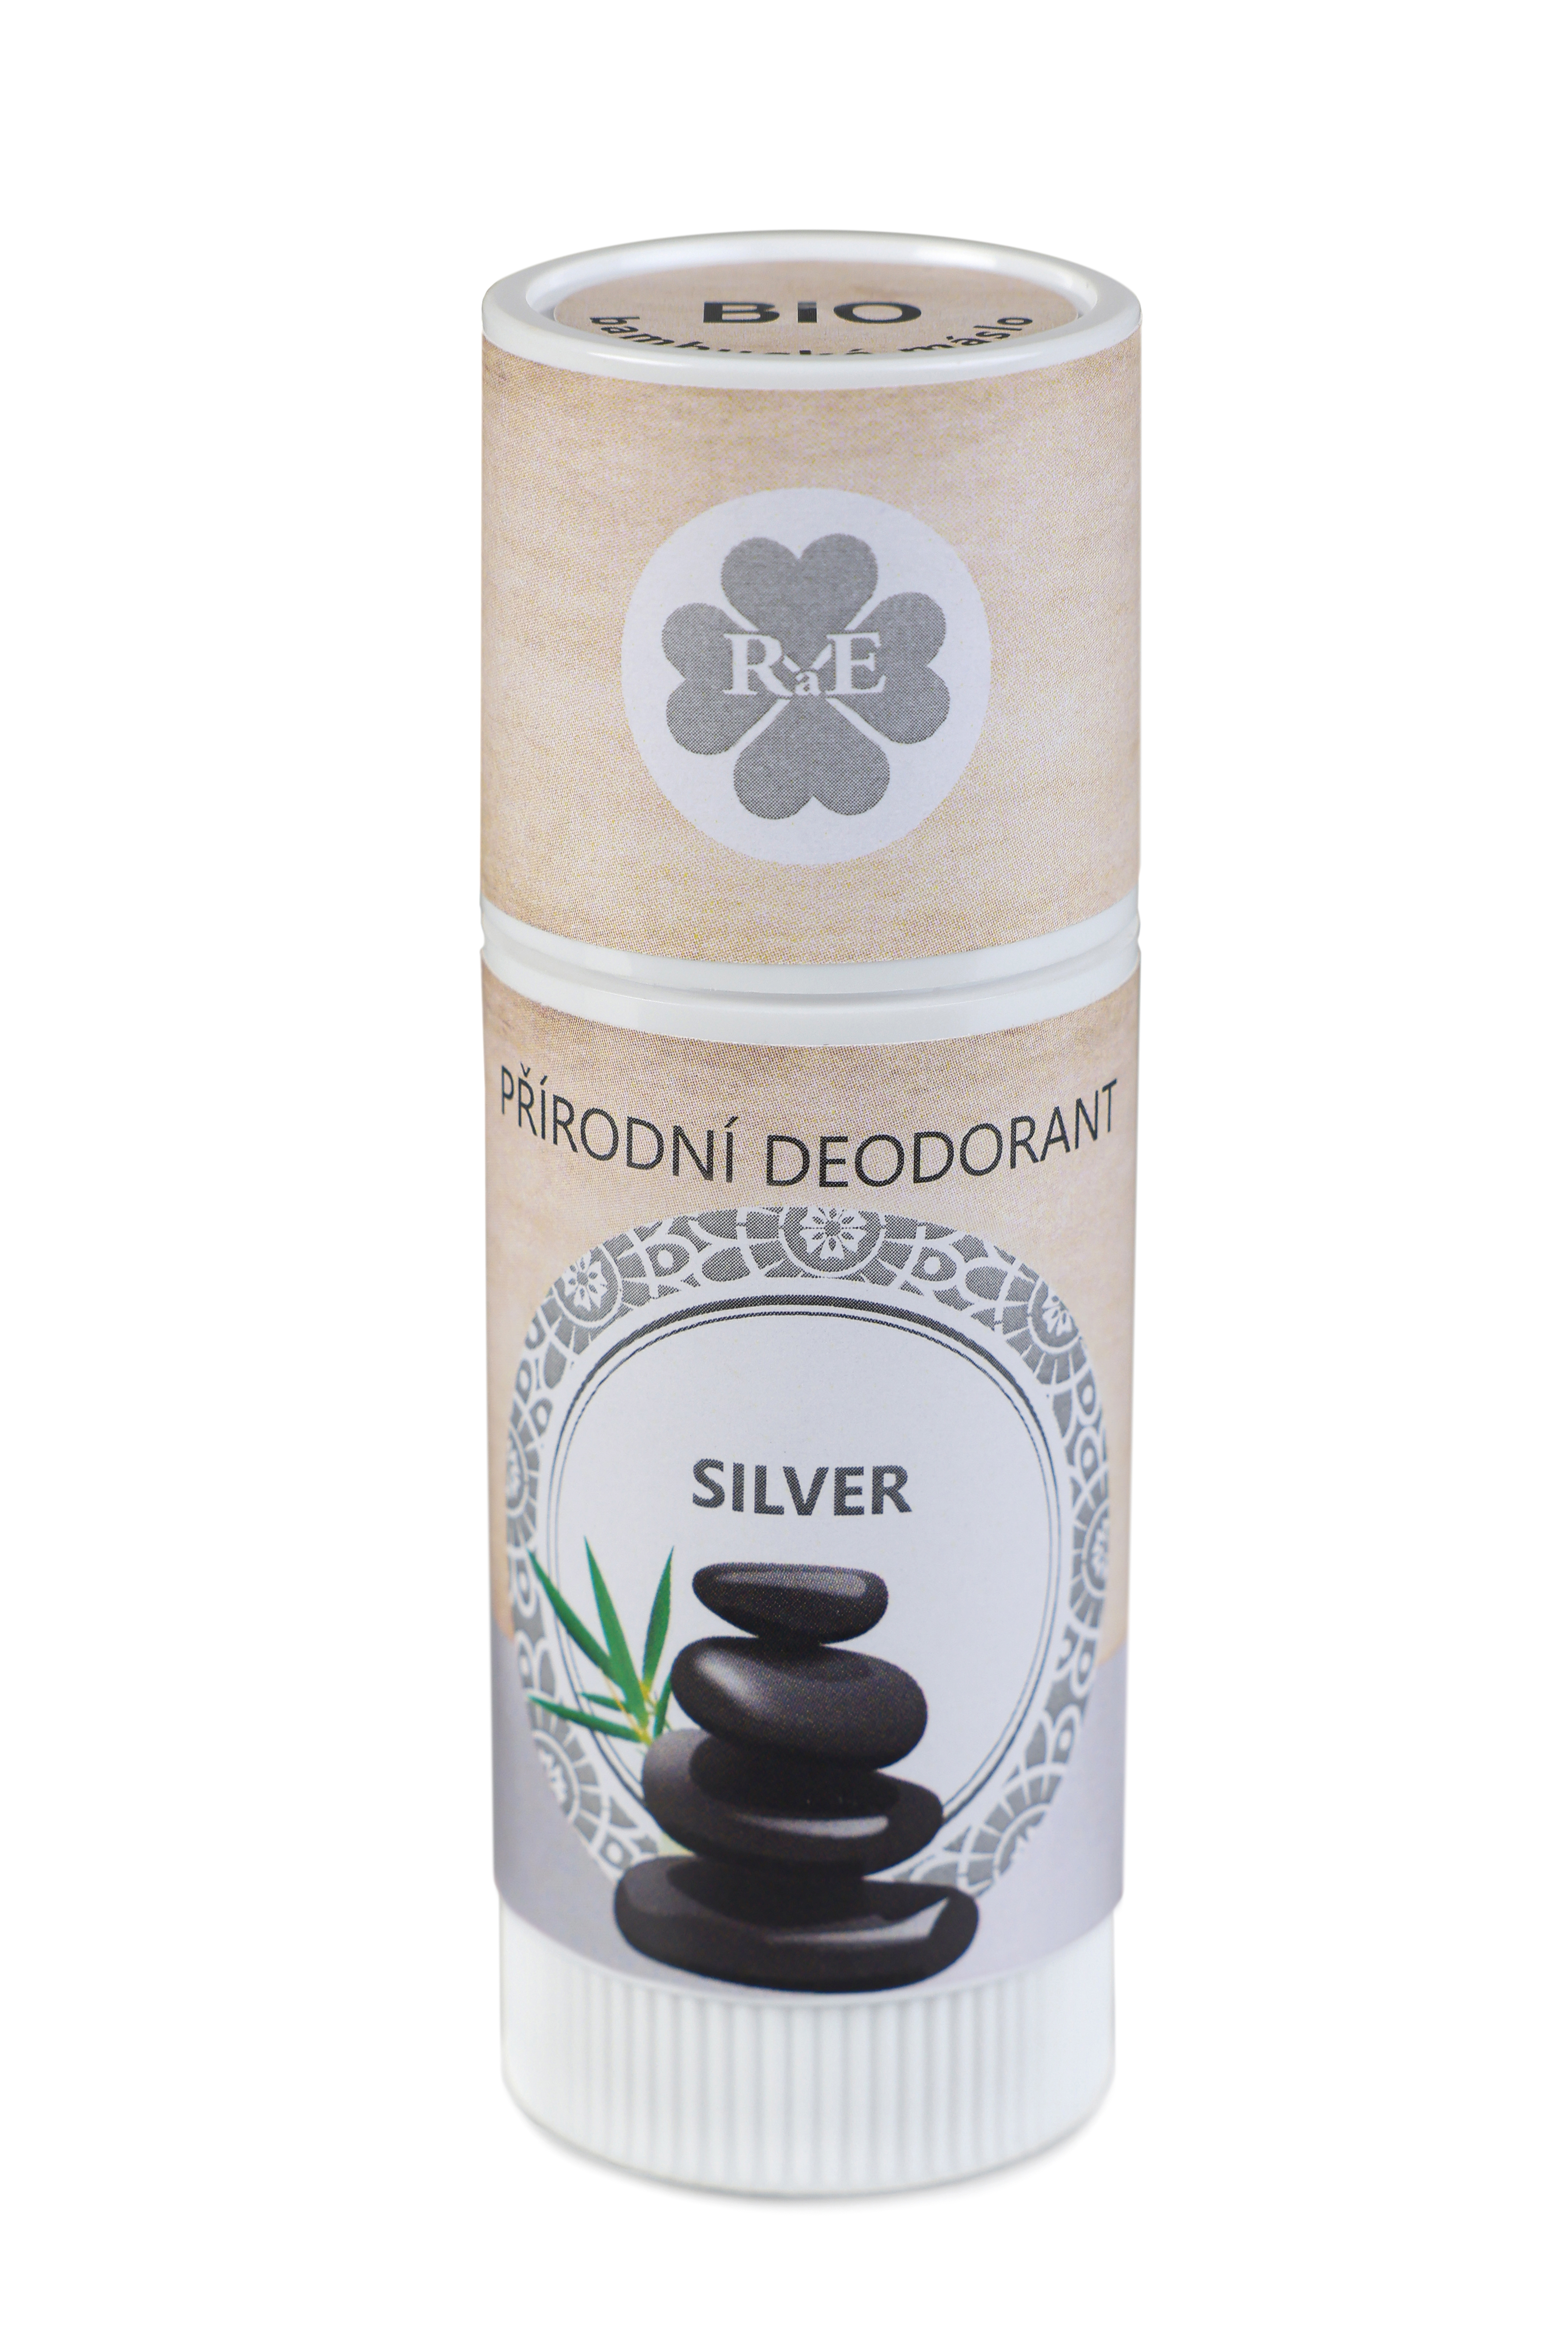 Prírodný deodorant BIO bambucké maslo s vôňou Silver 25 ml